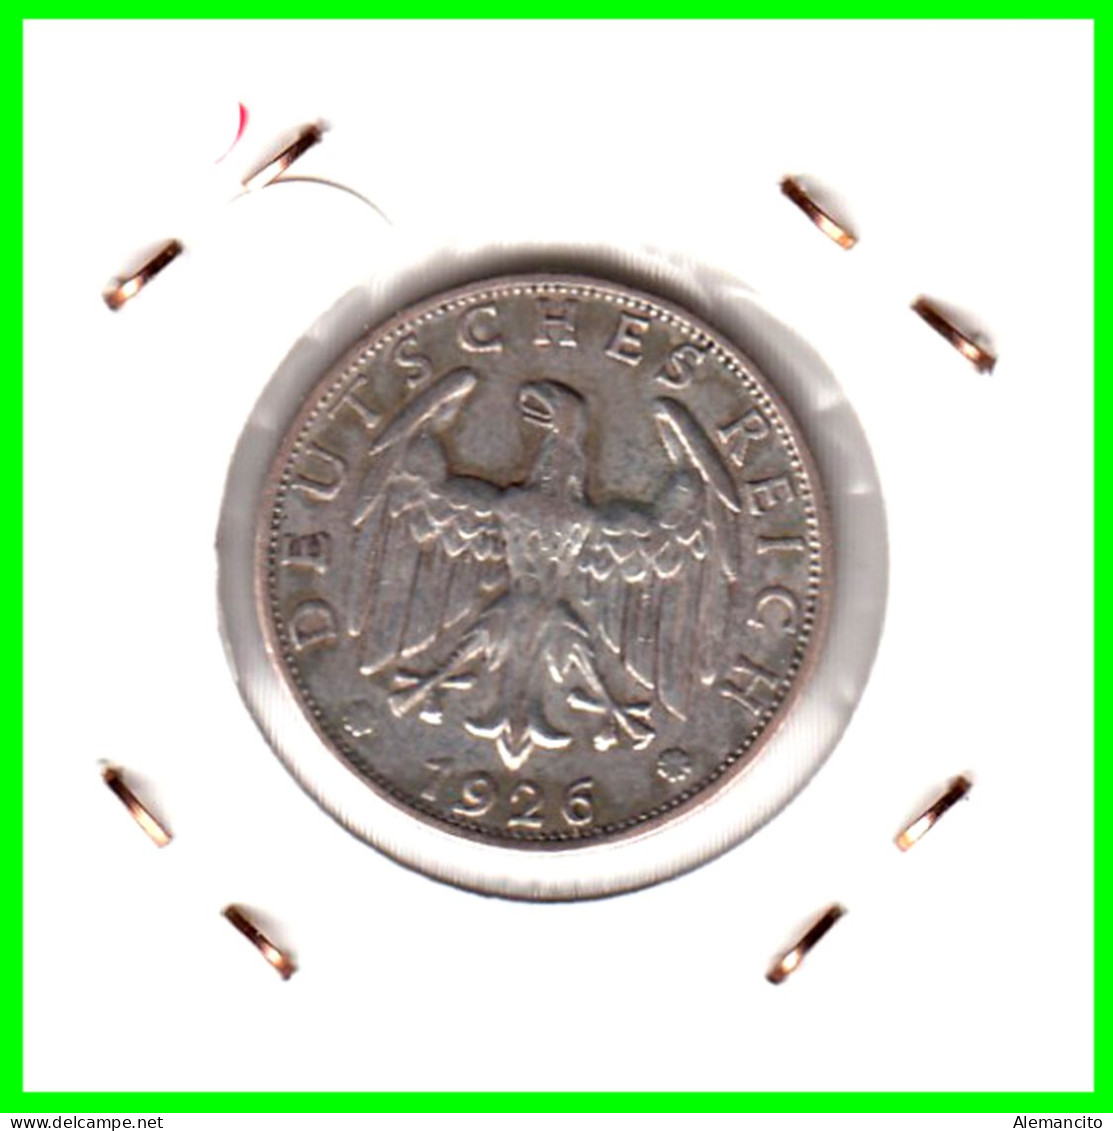 GERMANY REPÚBLICA DE WEIMAR 2 REICHSMARK ( 1926 CECA - J )  ( DEUTSCHES REICHSMARK KM # 45 ) - 2 Reichsmark